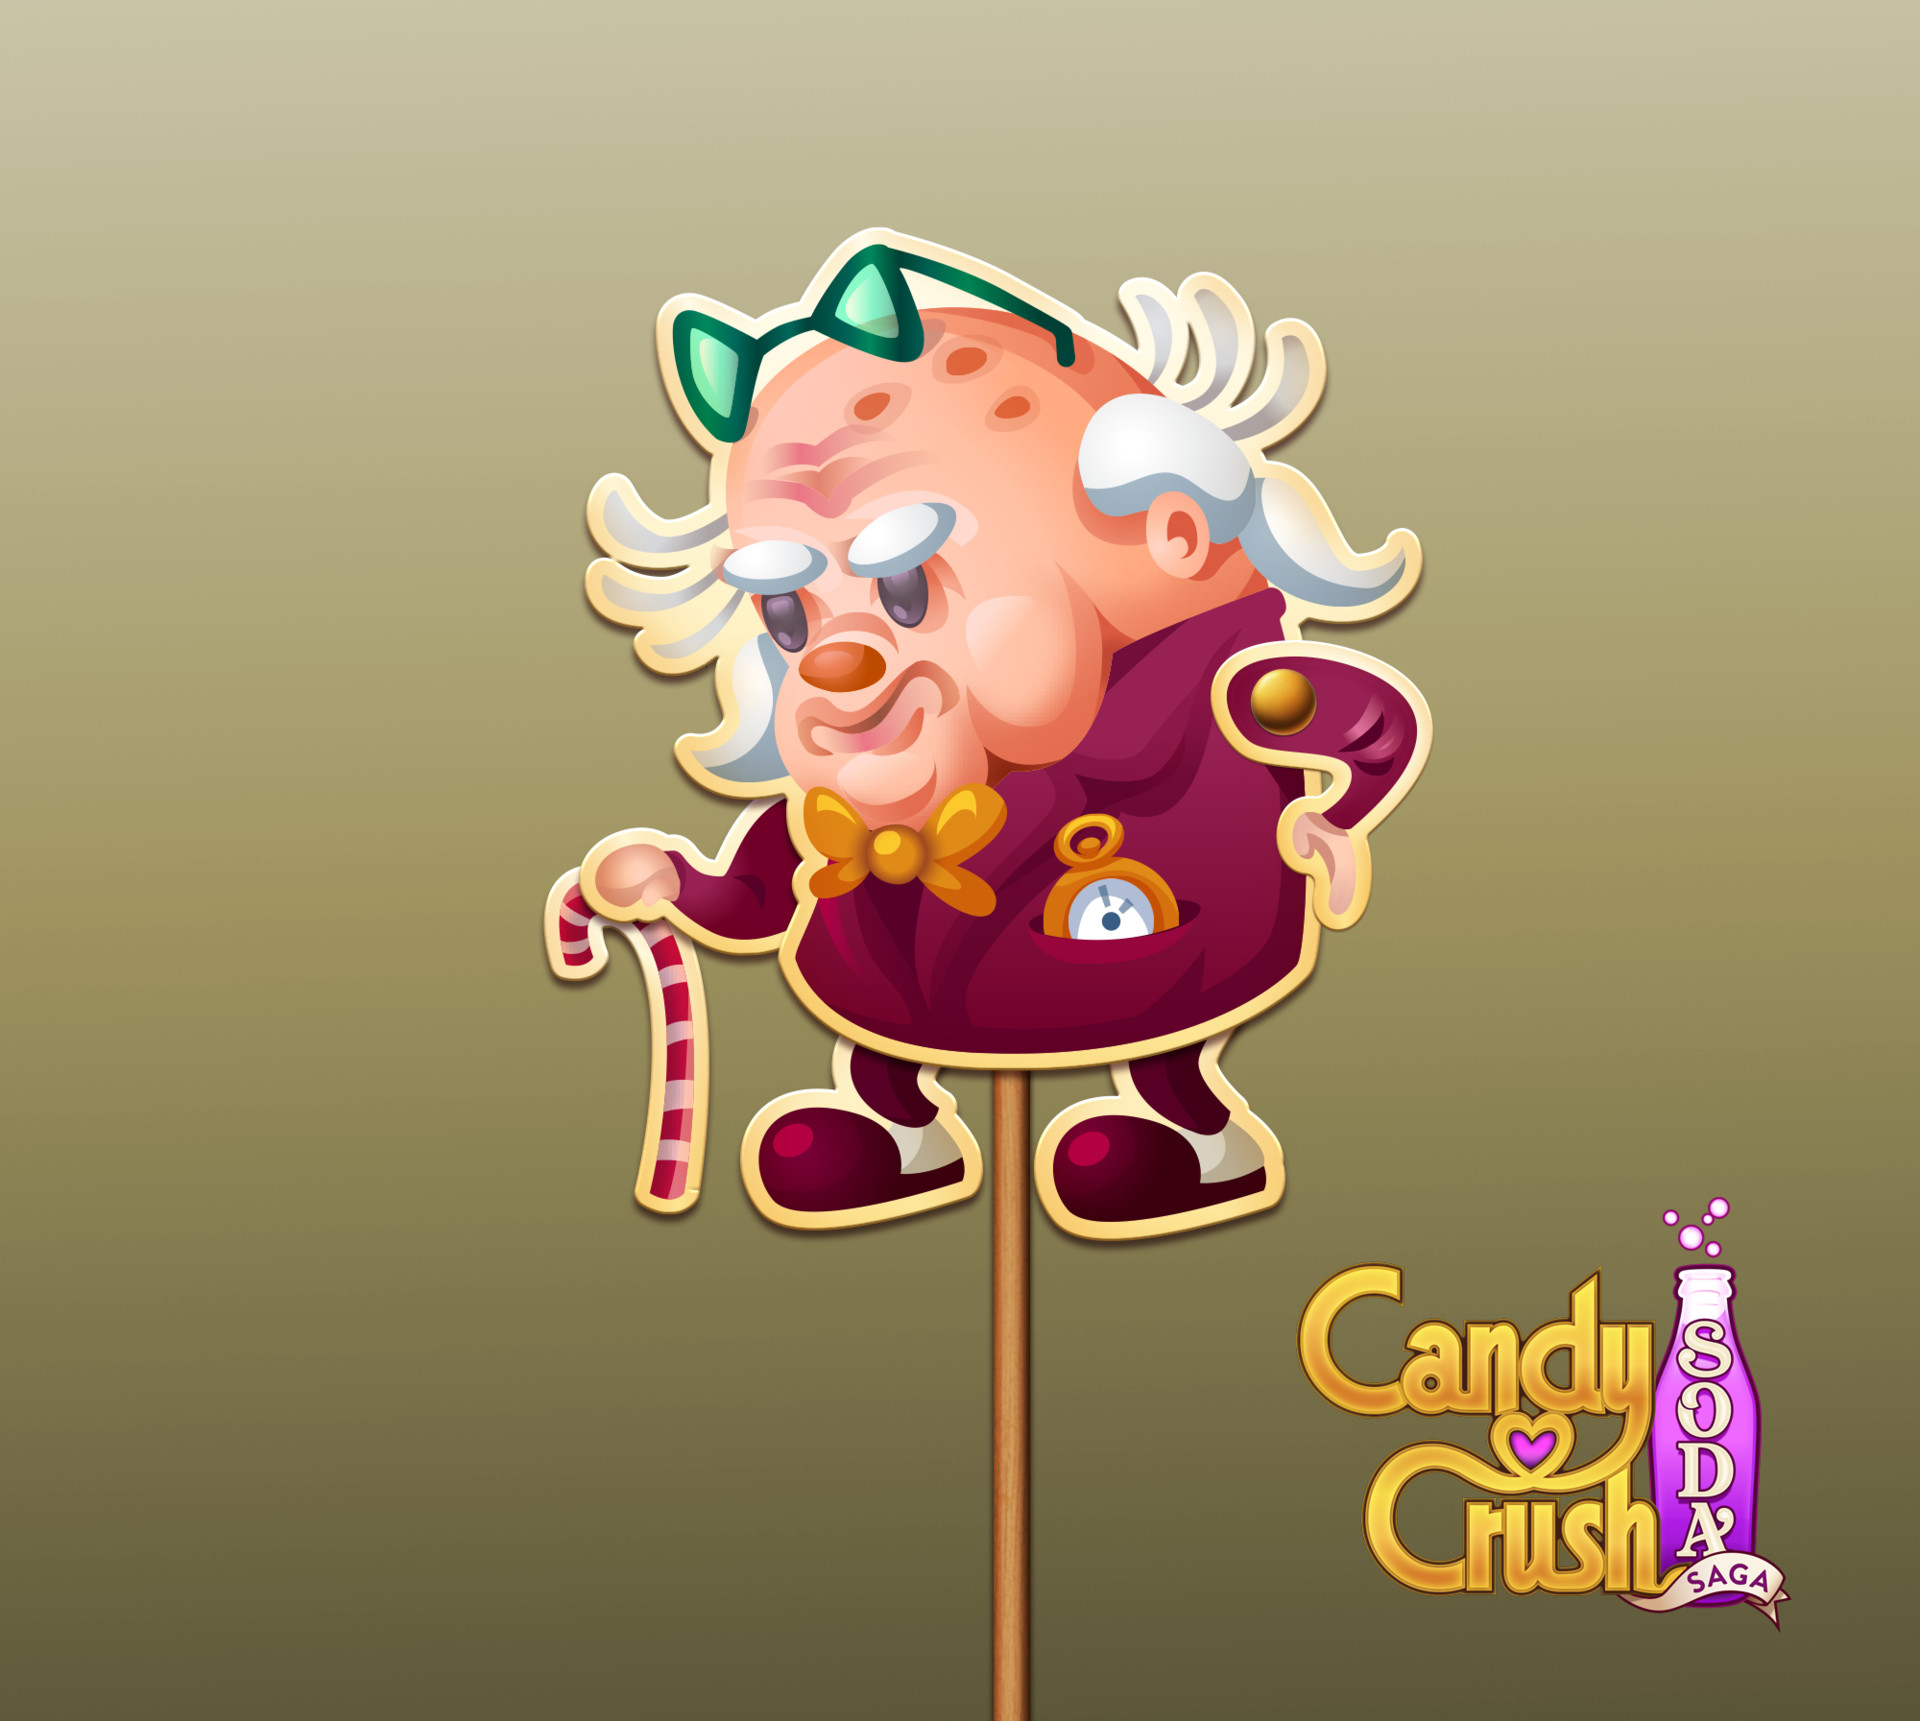 Candy Crush Soda saga on CandyCrushFanGroup - DeviantArt